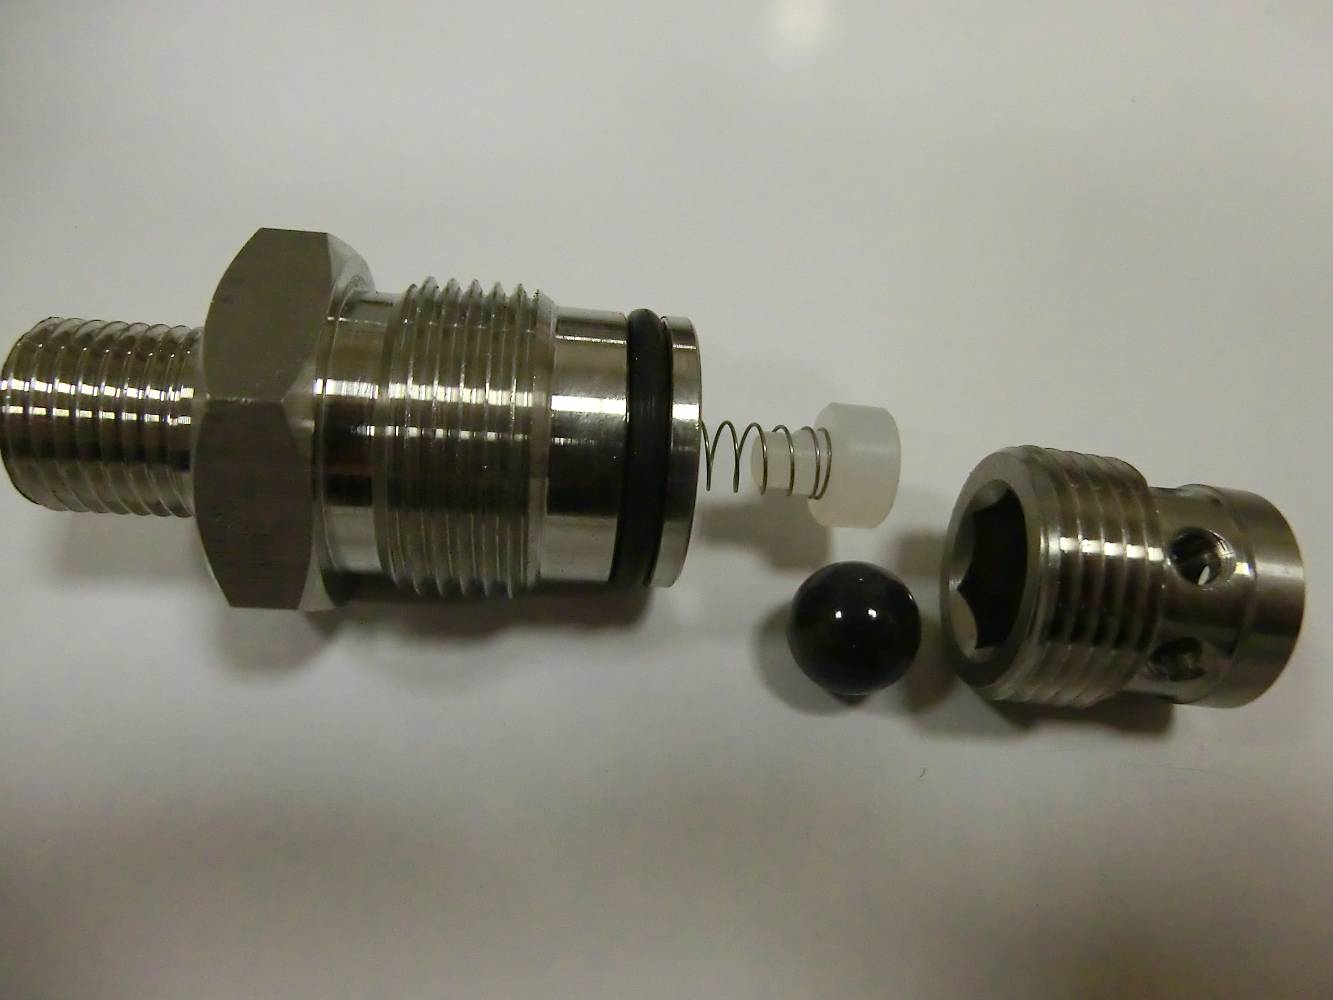 Запасные части: нагнетательный клапан для агрегата AS-310 (Cb-1250-310 max)